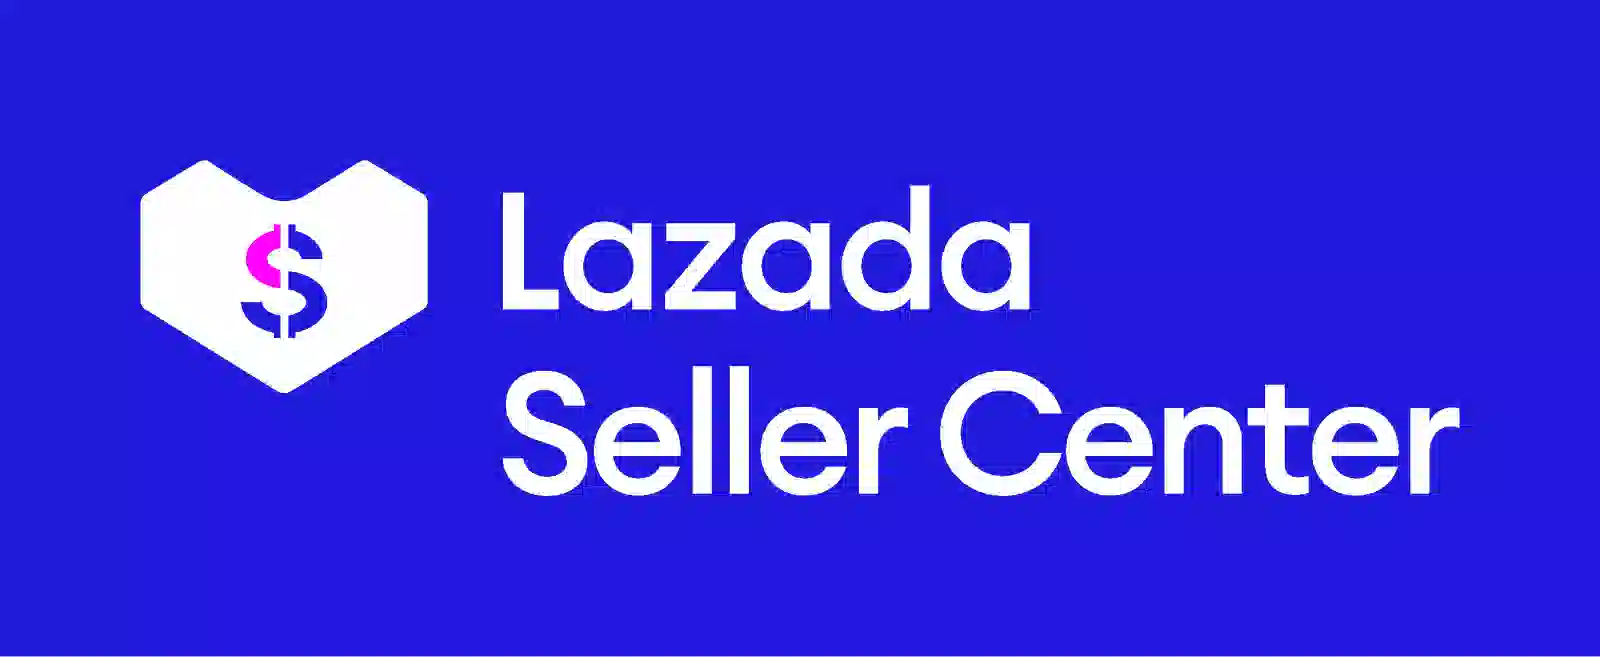 Lazada Seller Center: Cách sử dụng app bán hàng online hiệu quả -  Fptshop.com.vn